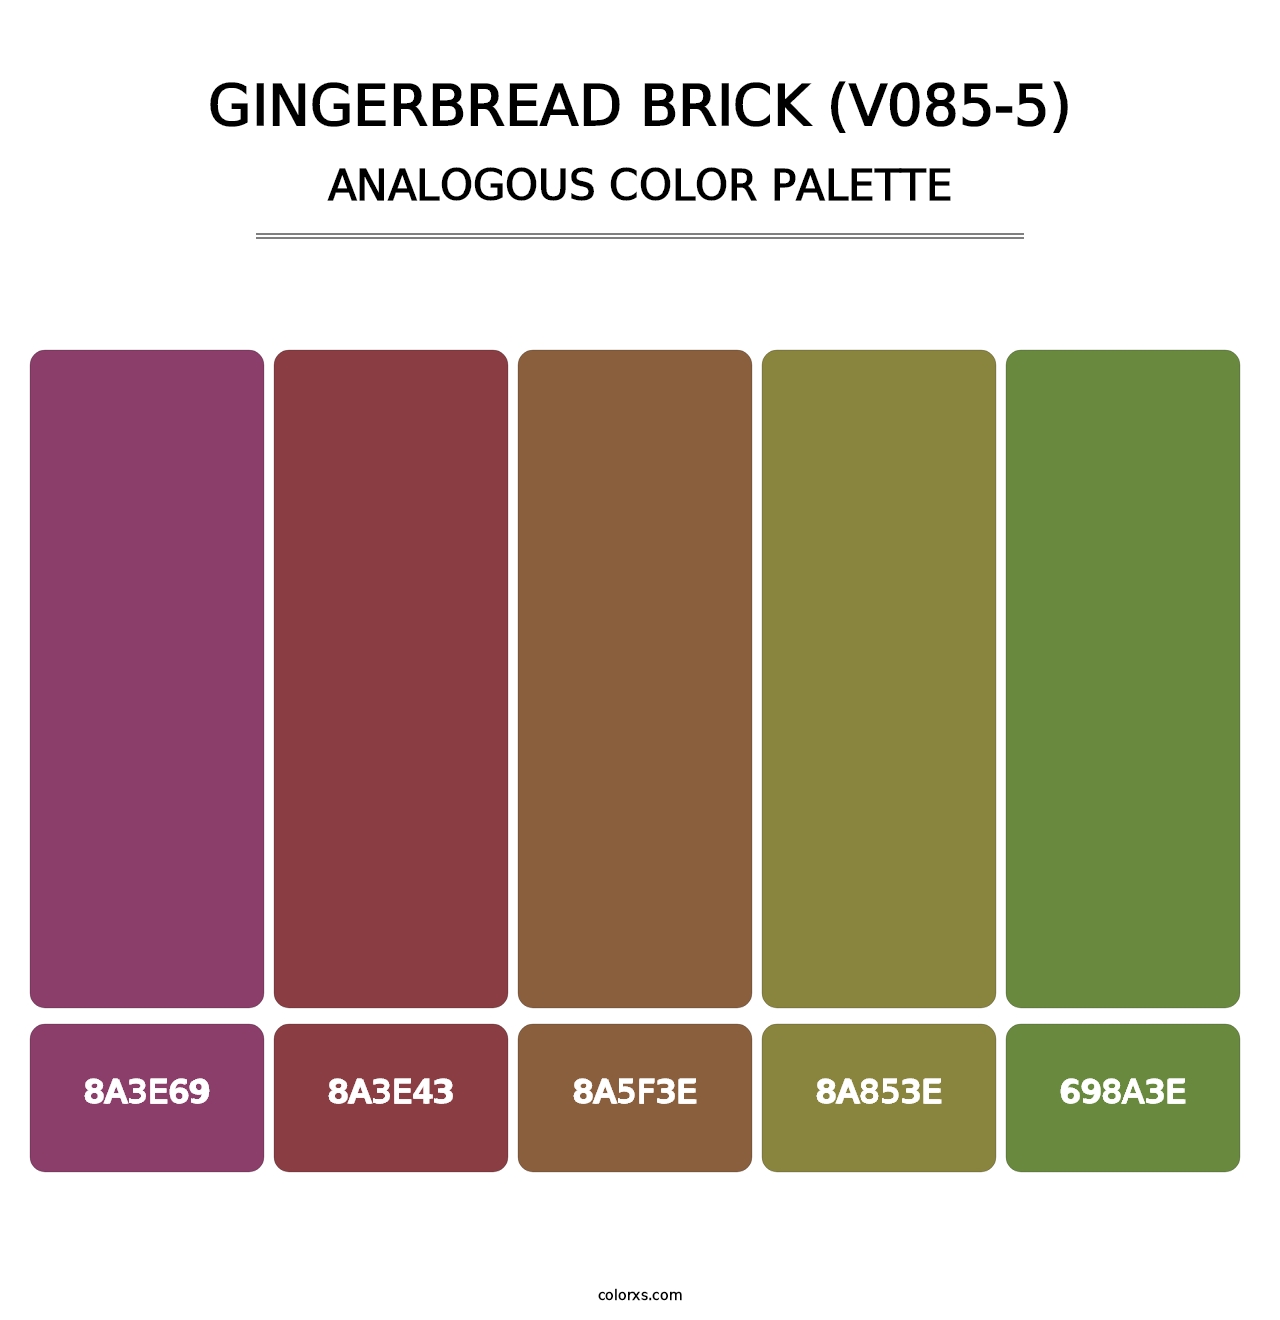 Gingerbread Brick (V085-5) - Analogous Color Palette